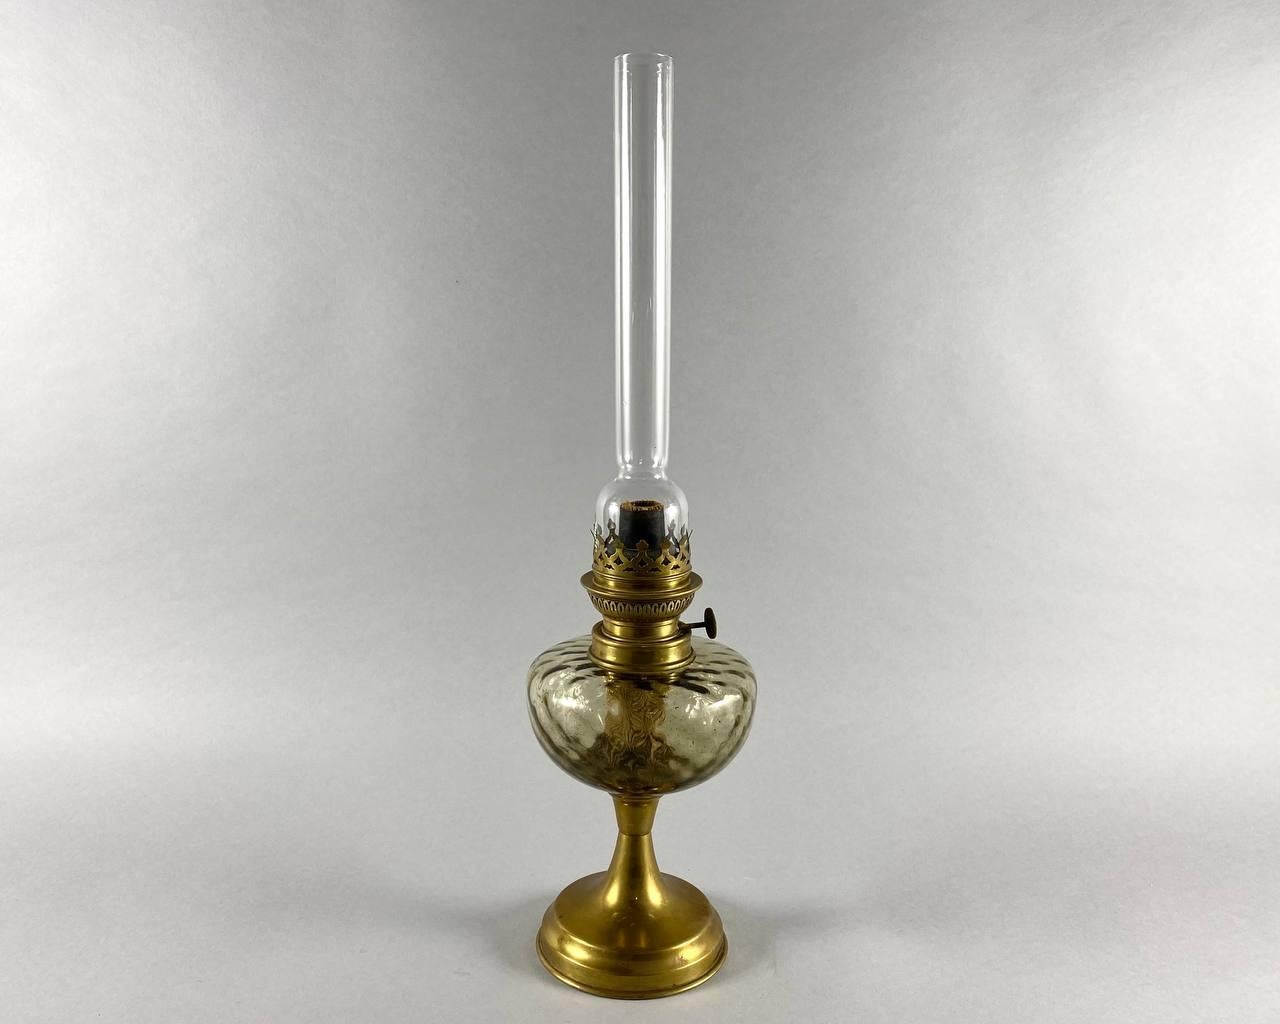 Die Lampe ist in einem klassischen Stil gefertigt, der Korpus der Lampe ist aus schönem handgefertigtem Glas.  

 Der Sockel ist aus vergoldetem Metall. Im Laufe der Zeit hat die Lampe nicht nur ihr ursprüngliches Gefolge behalten, sondern auch